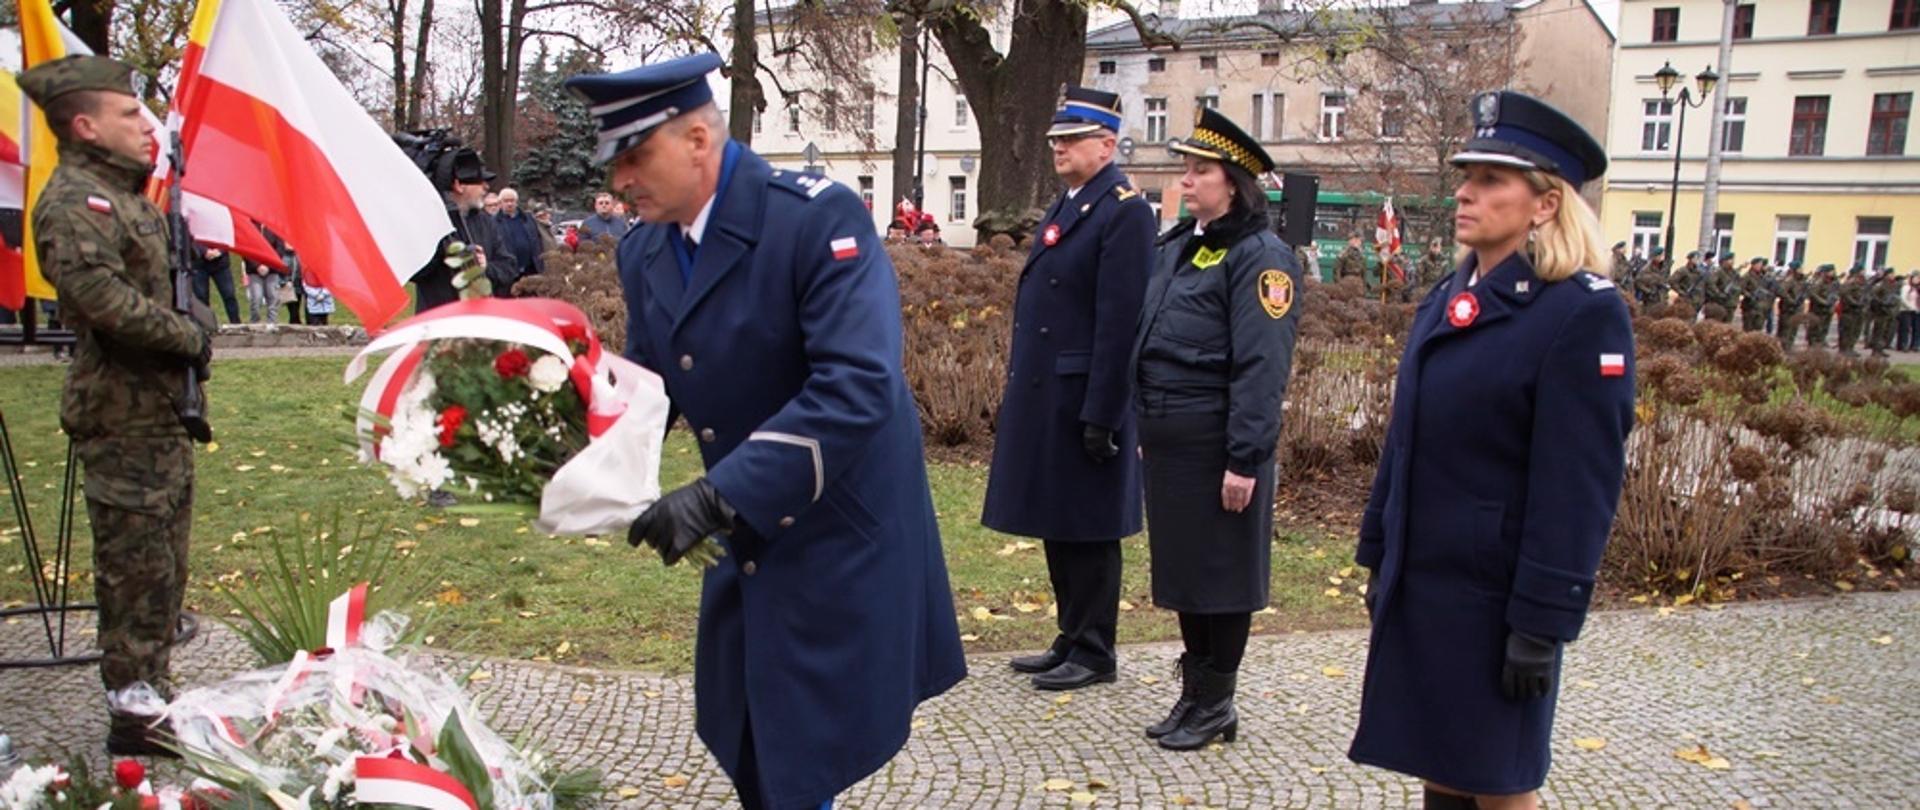 Strażacy z KP PSP w Inowrocławiu godnie uczcili Narodowe Święto Niepodległości -patriotycznie i sportowo